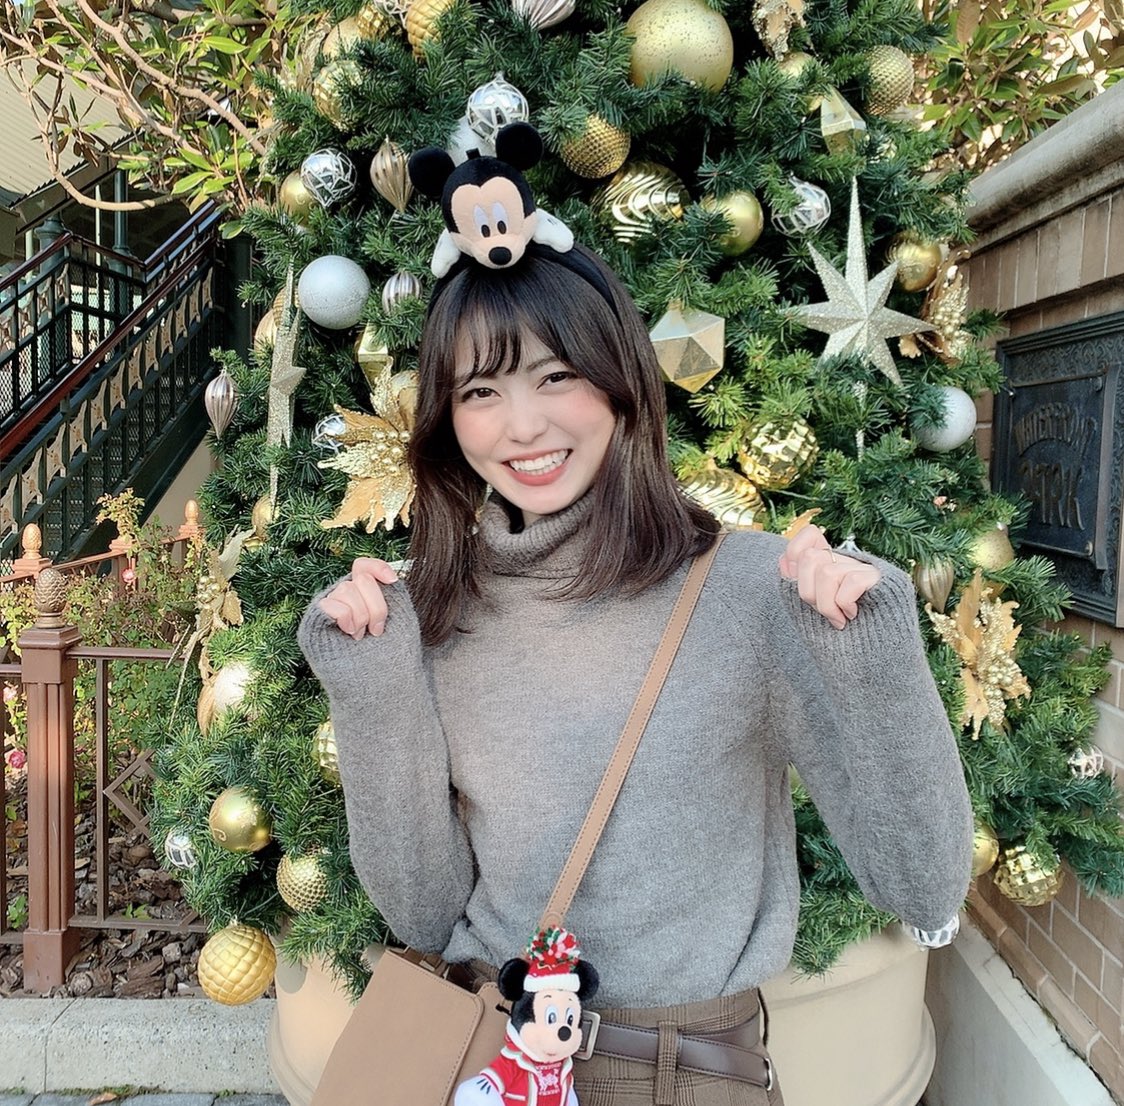 前田亜美 今週の ディズニー365 は近藤春菜さんと一緒に東京ディズニーランドロケしてきました 春菜さんと一緒にパークを楽しんじゃいましたあ